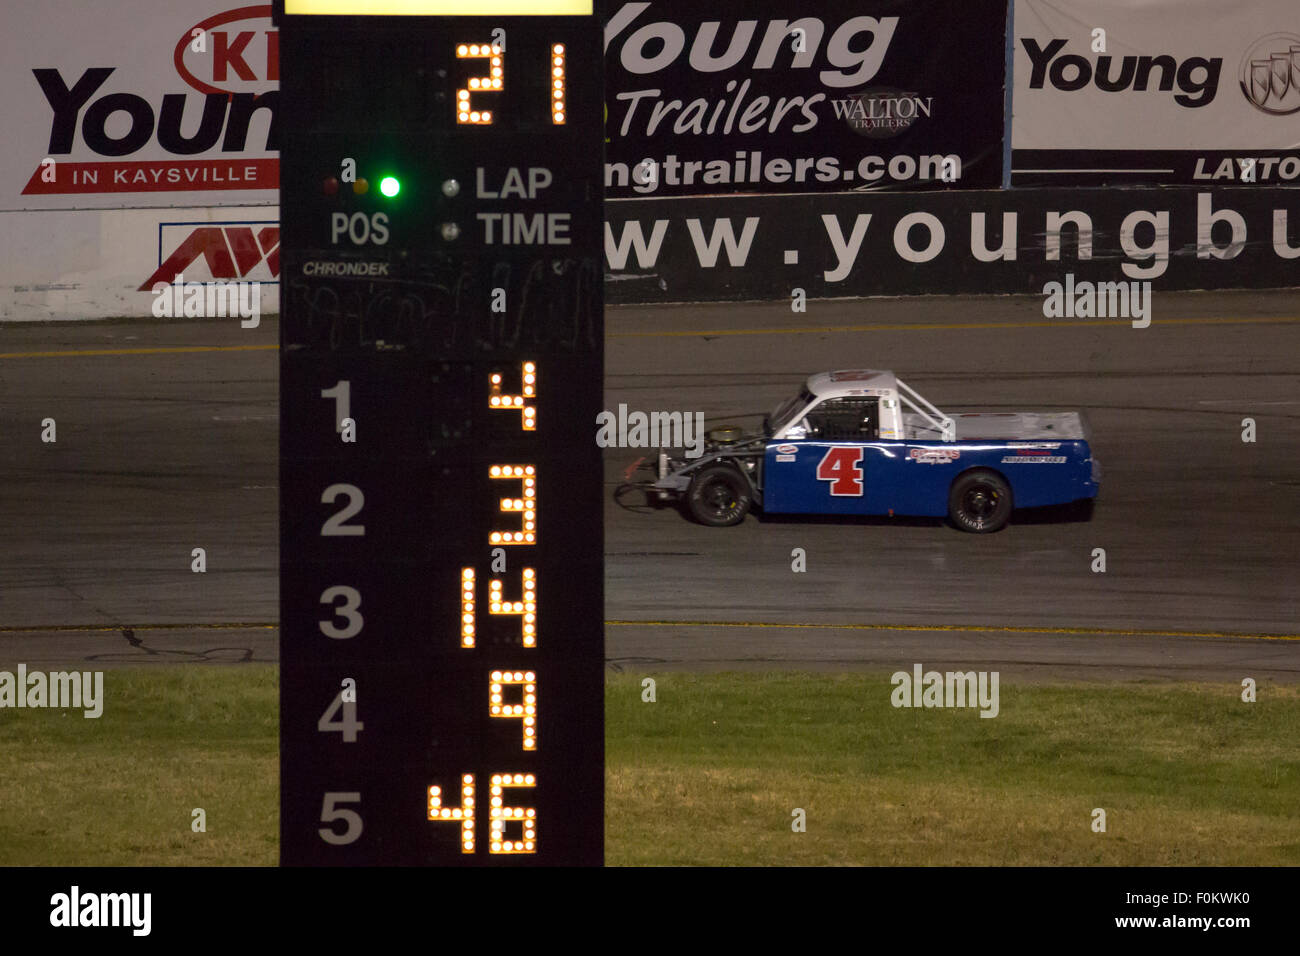 Nicht identifizierte Gewinner fahren die blaue Nummer 4 Stock-Car während eines Rennwagens. Vereinigte Staaten, 2013. Stockfoto